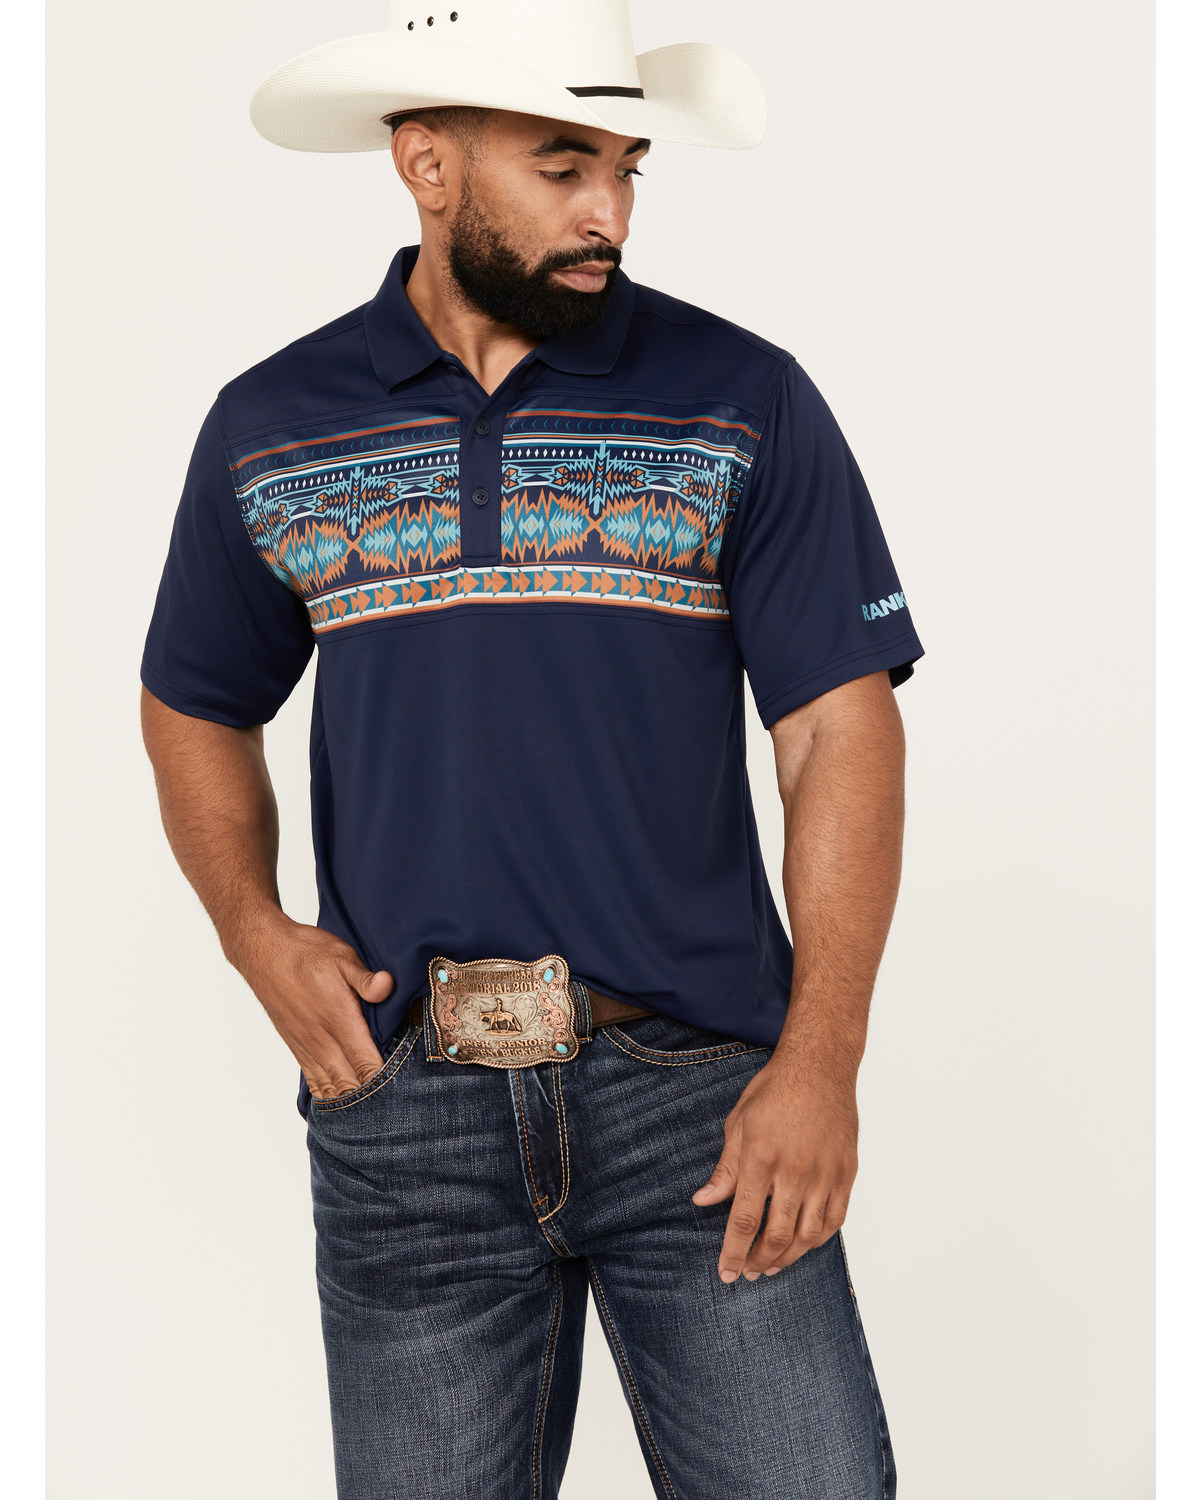 RANK 45® Men's Knao Border Print Short Sleeve Polo Shirt